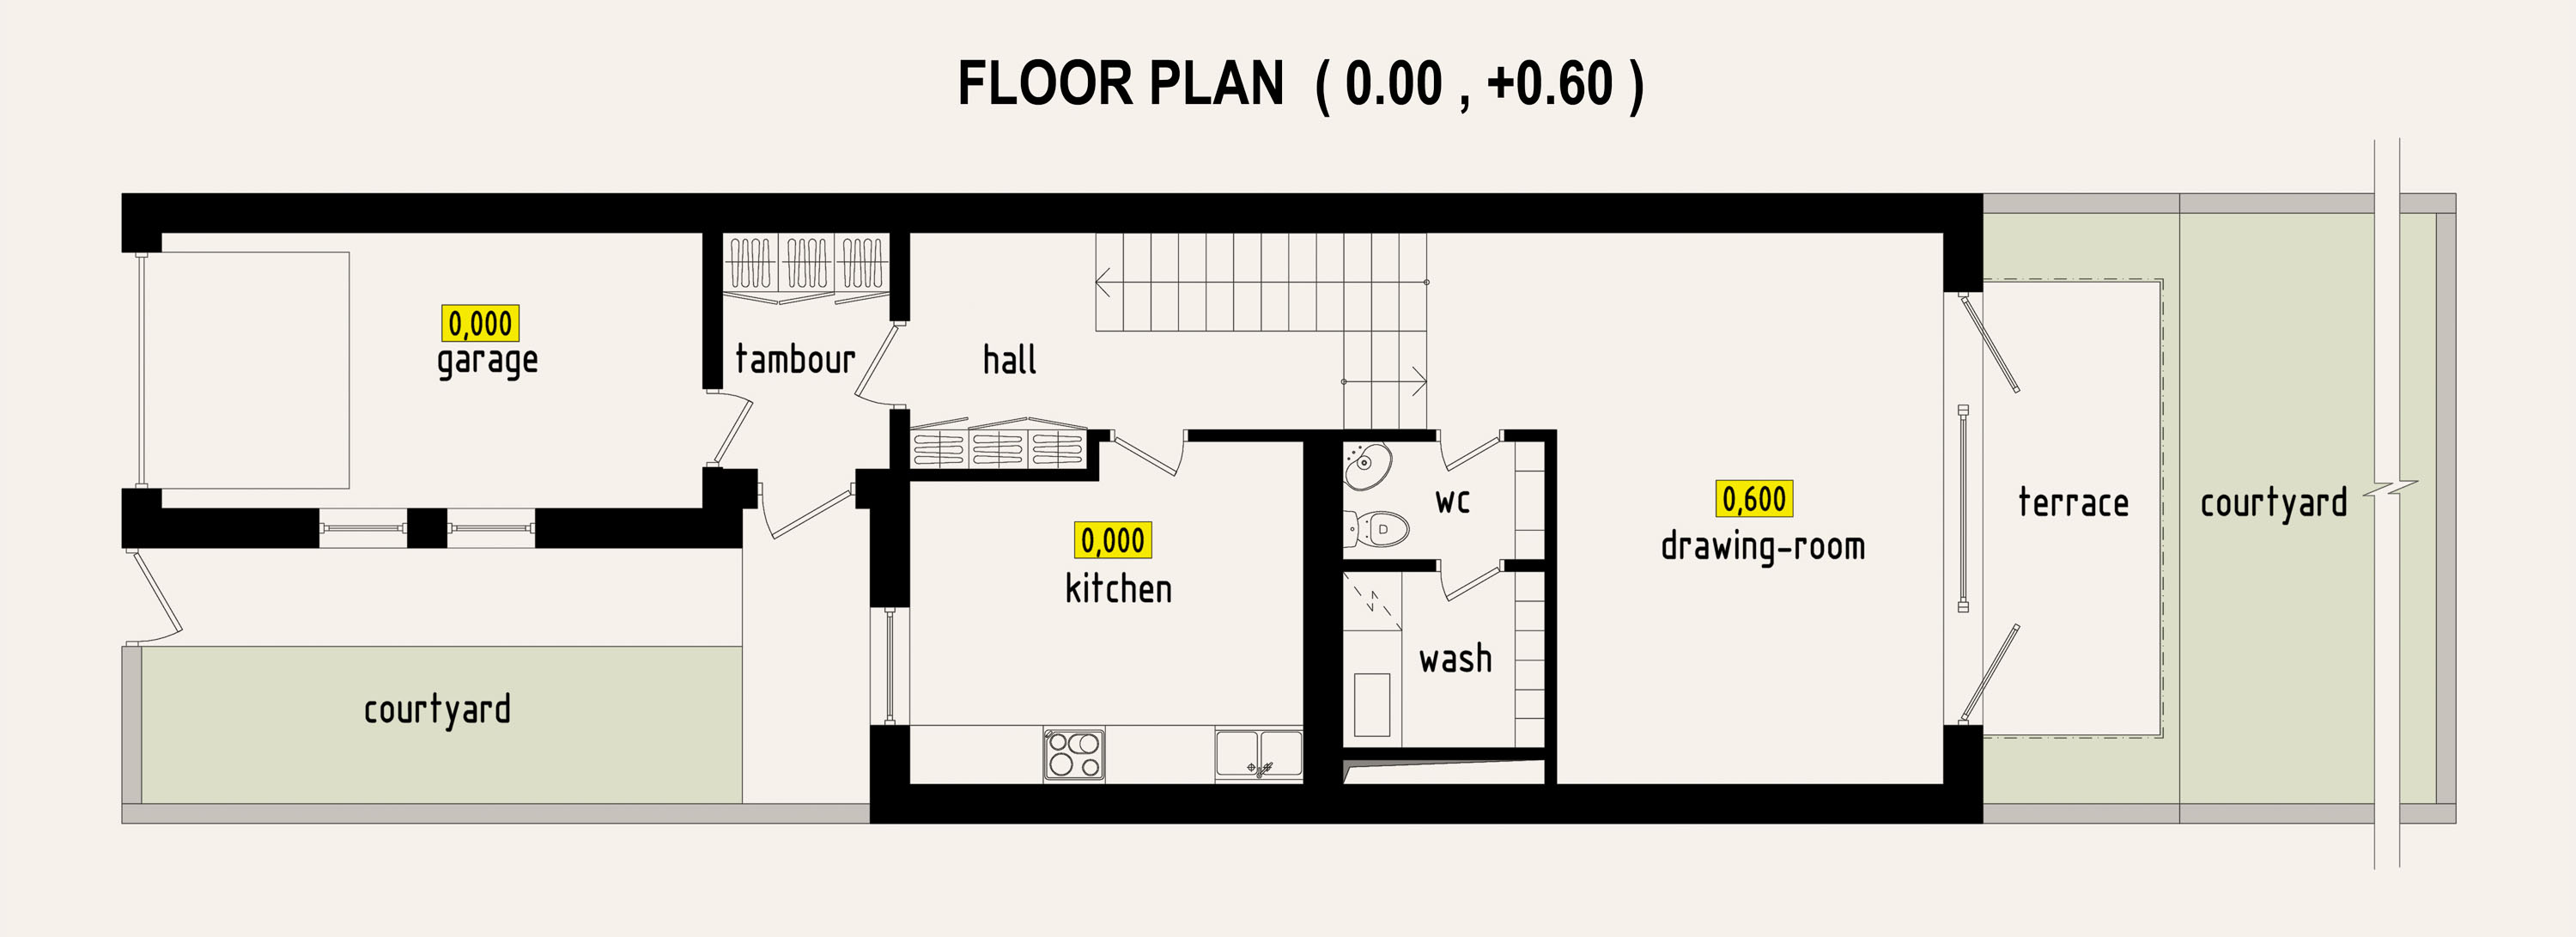 Options de conception pour les maisons en rangée. Partie II dans 3d max corona render image